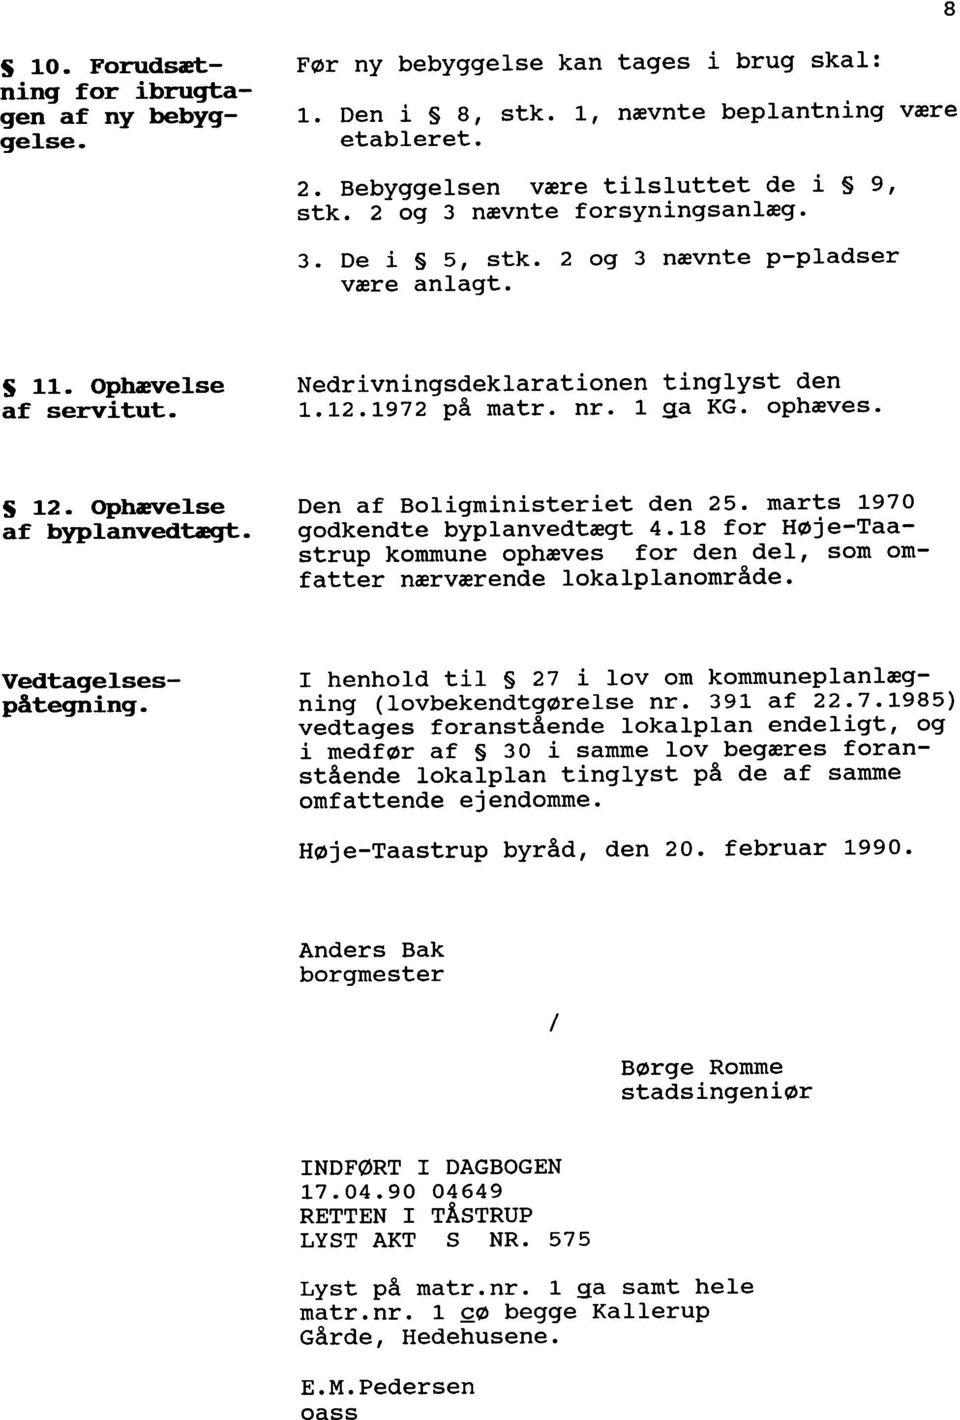 Ophævelse Den af Boligministeriet den 25. marts 1970 af byplanvedtægt. godkendte byplanvedtægt 4.18 for H0je-Taastrup kommune ophæves for den del, som omfatter nærværende lokalplanomr8de.